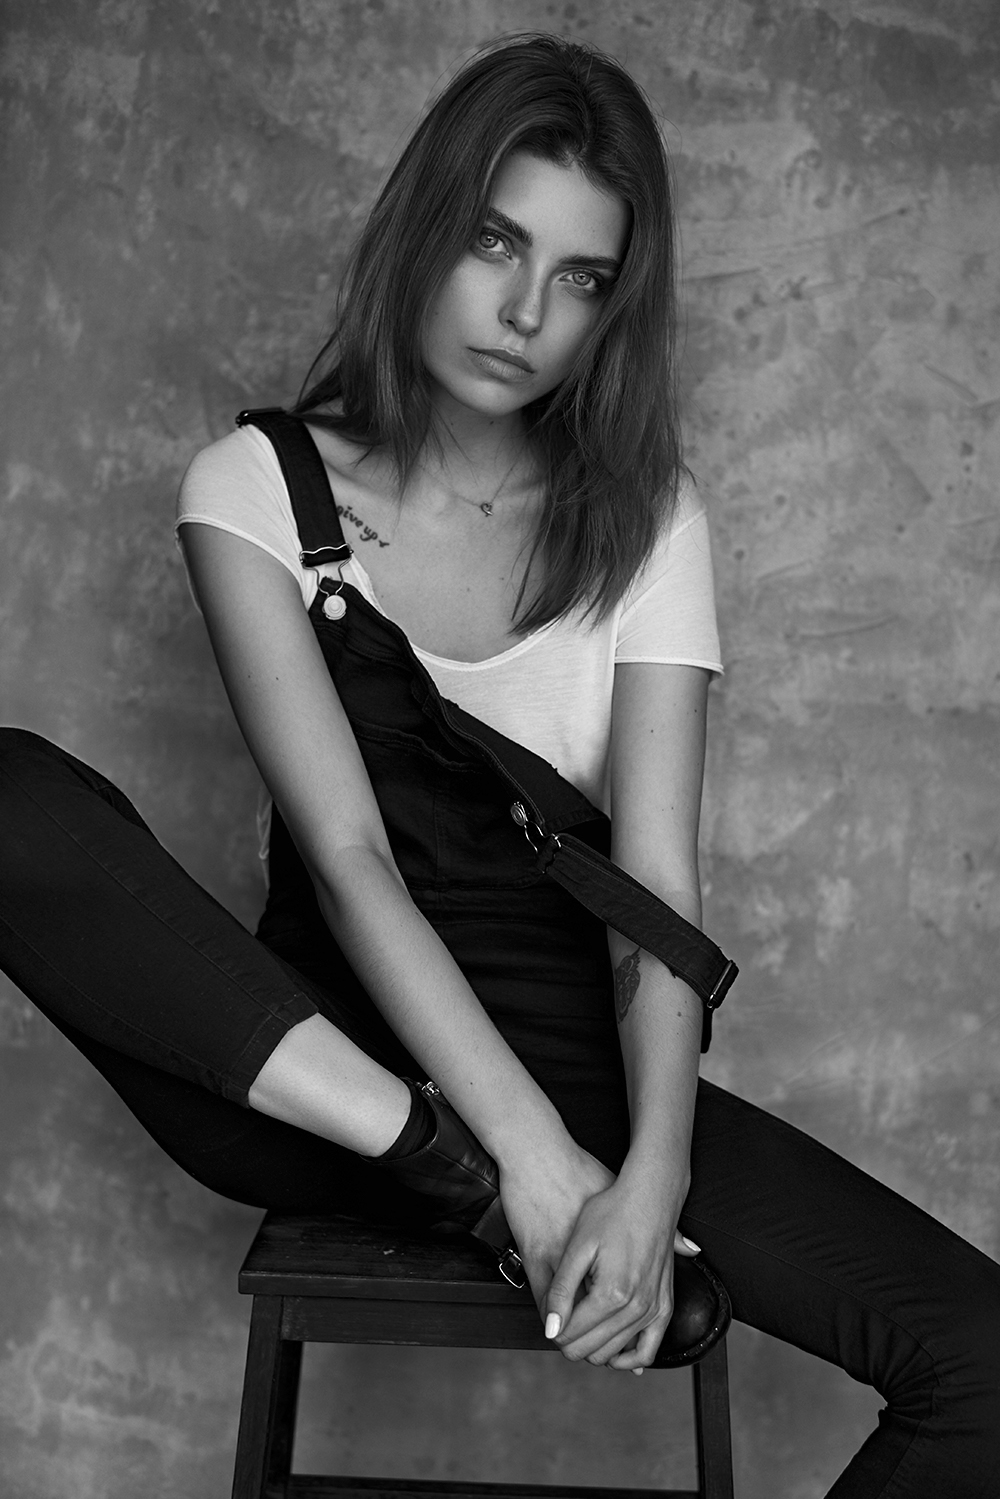 black and white portrait natural model test by the window daylight Polish Model simple anna dyszkiewicz annadyszkiewicz